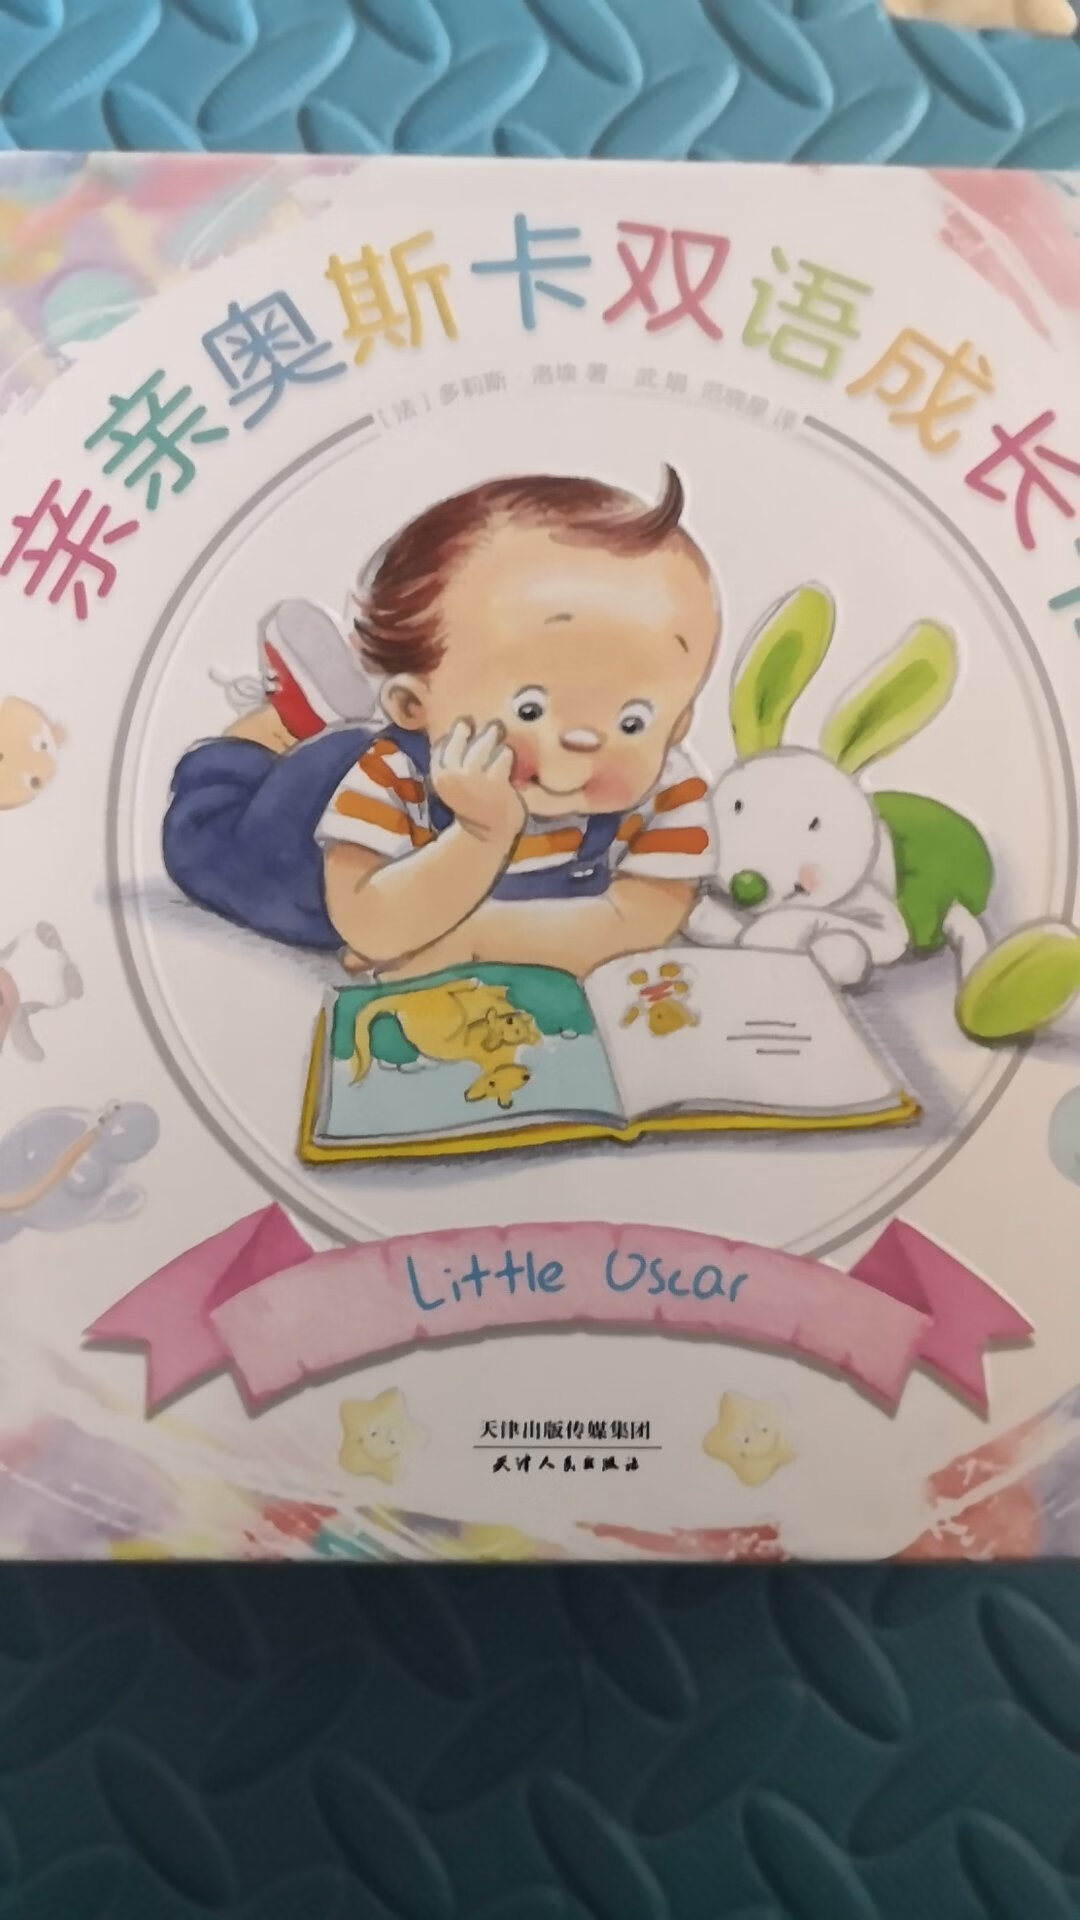 中英文的绘本，宝宝挺喜欢的，再买一套送给朋友